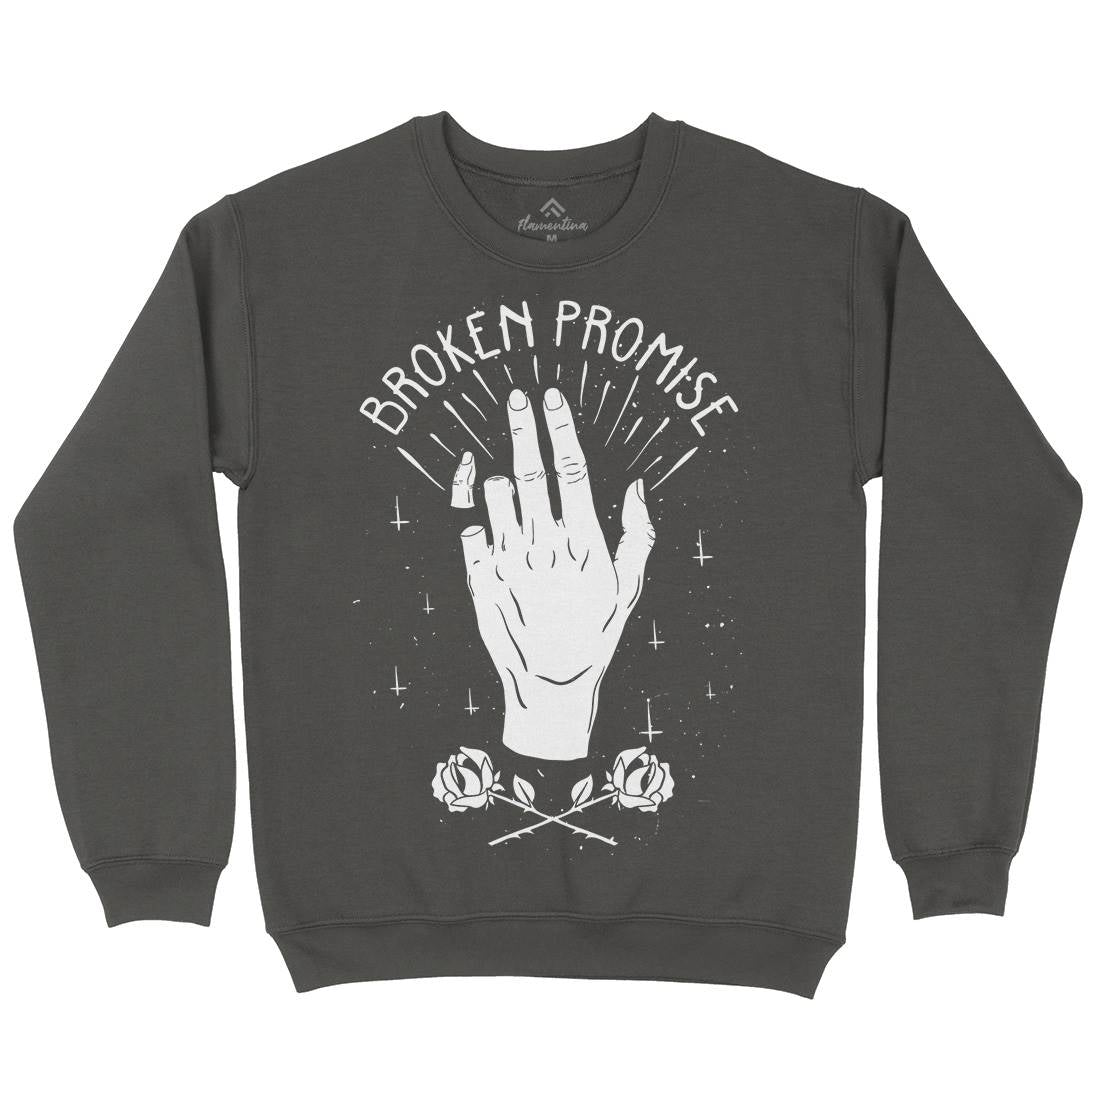 Broken Promise Kids Crew Neck Sweatshirt Retro D447